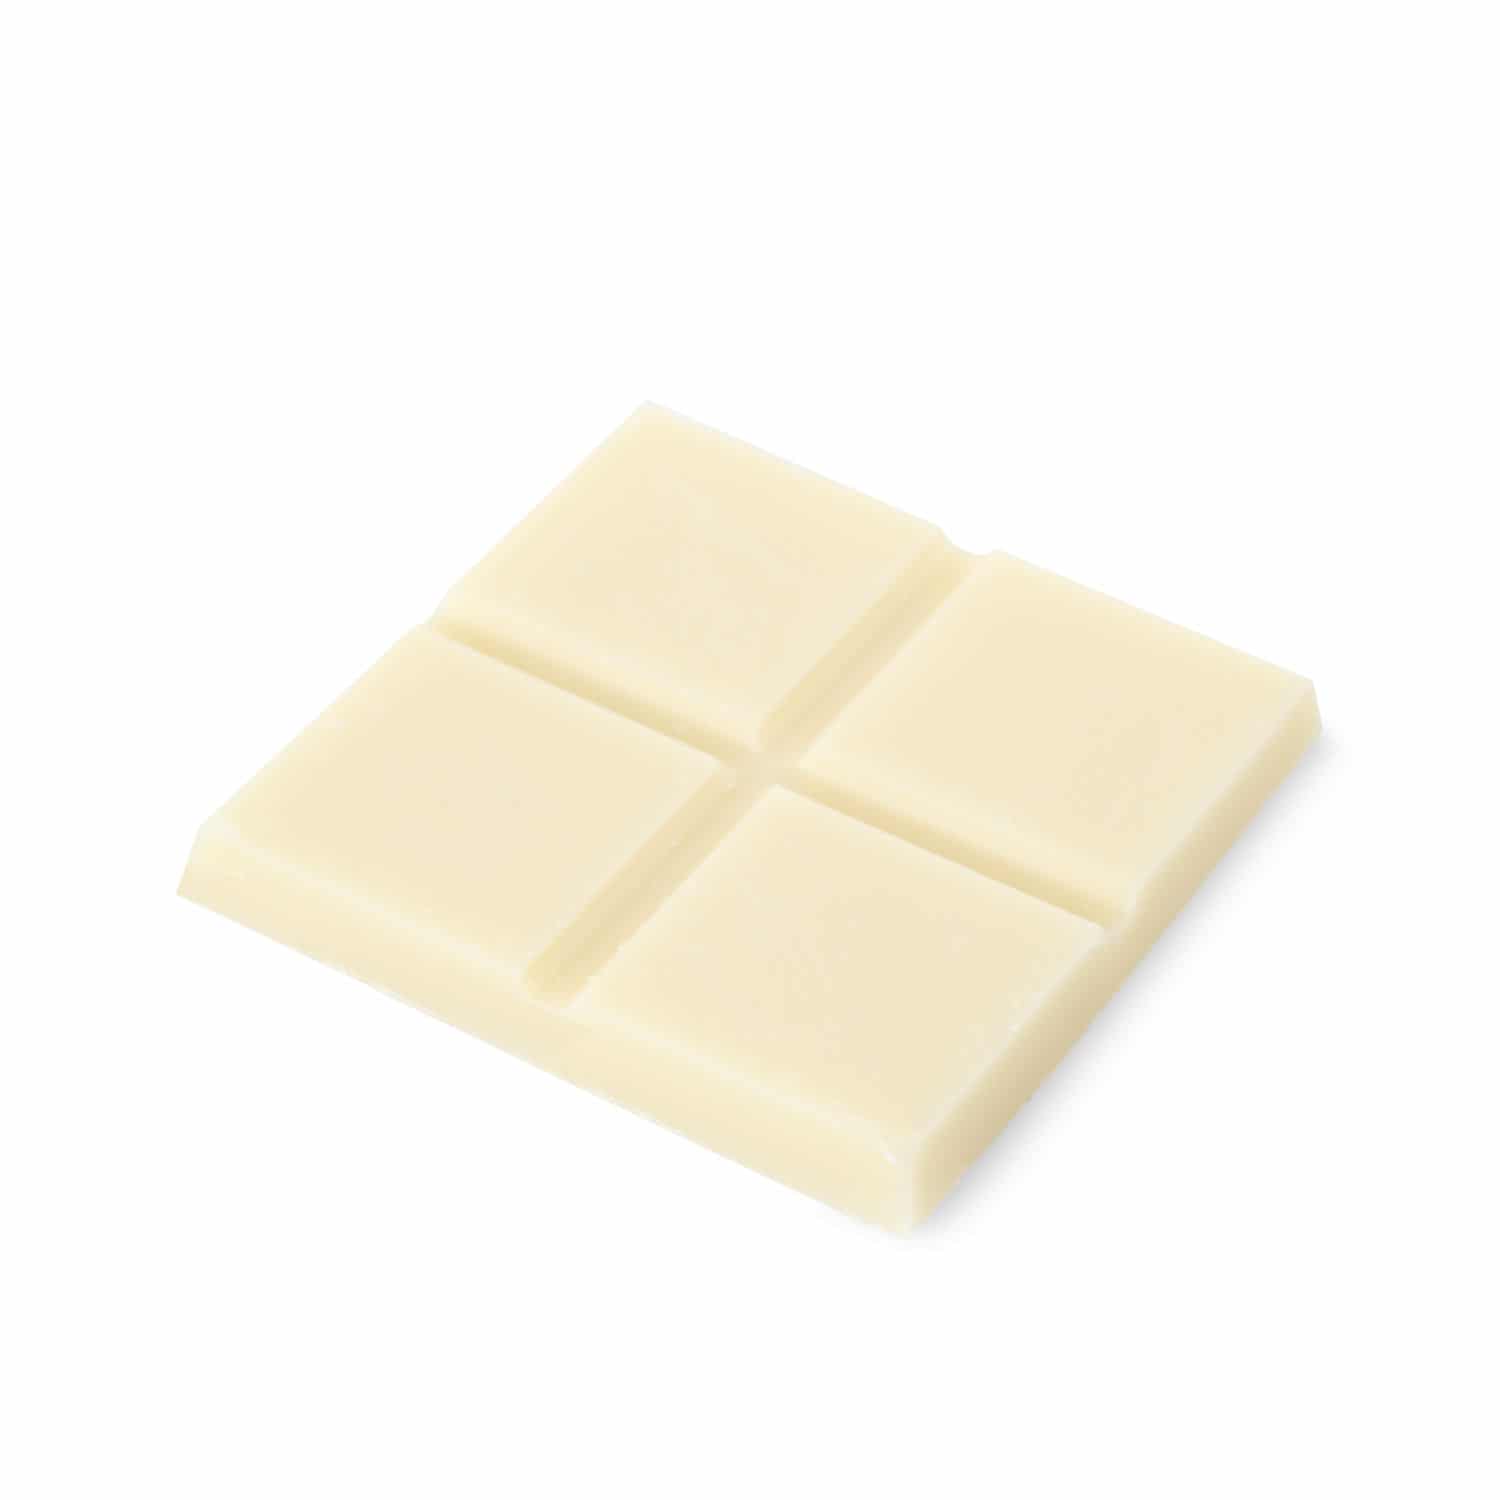 Ein Stück CBD weiße Schokolade auf weißem Hintergrund.